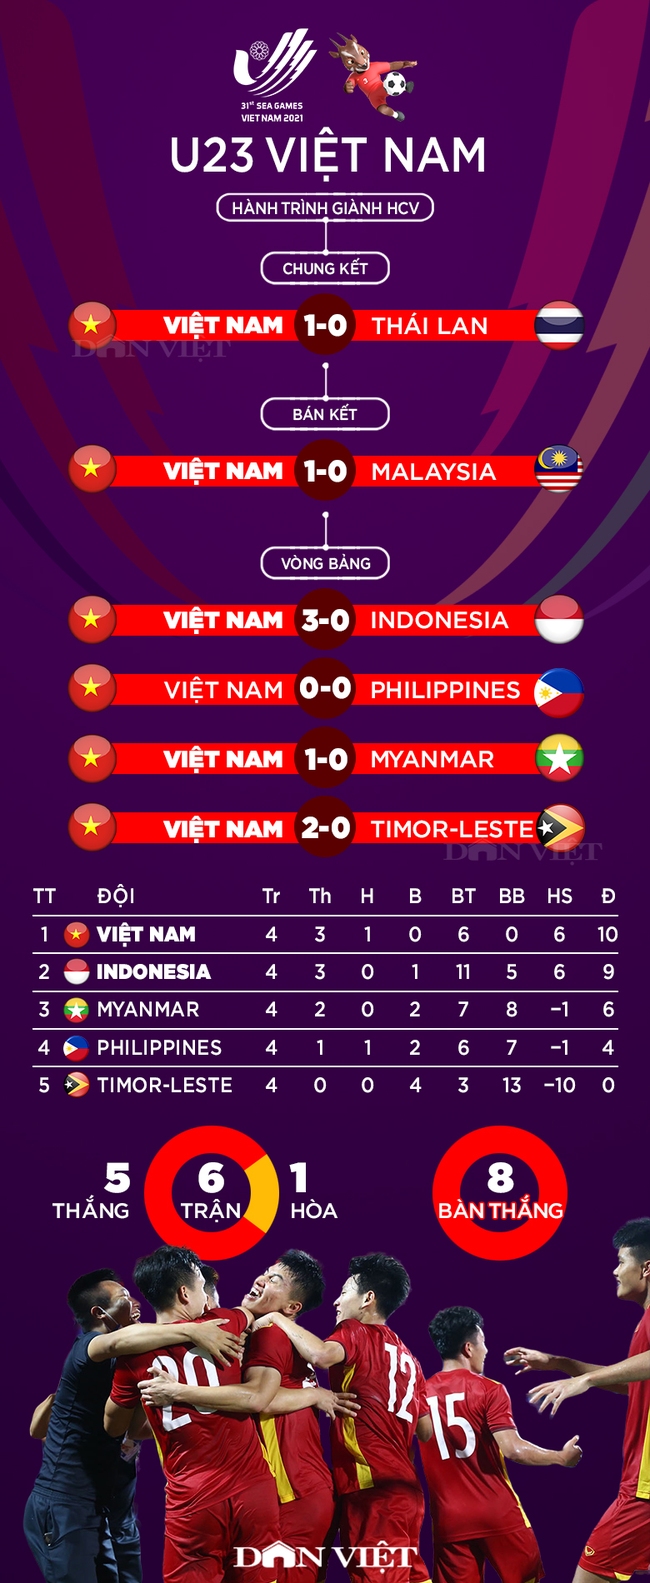 Infographic: Hành trình đăng quang ấn tượng của U23 Việt Nam tại SEA Games 31 - Ảnh 1.